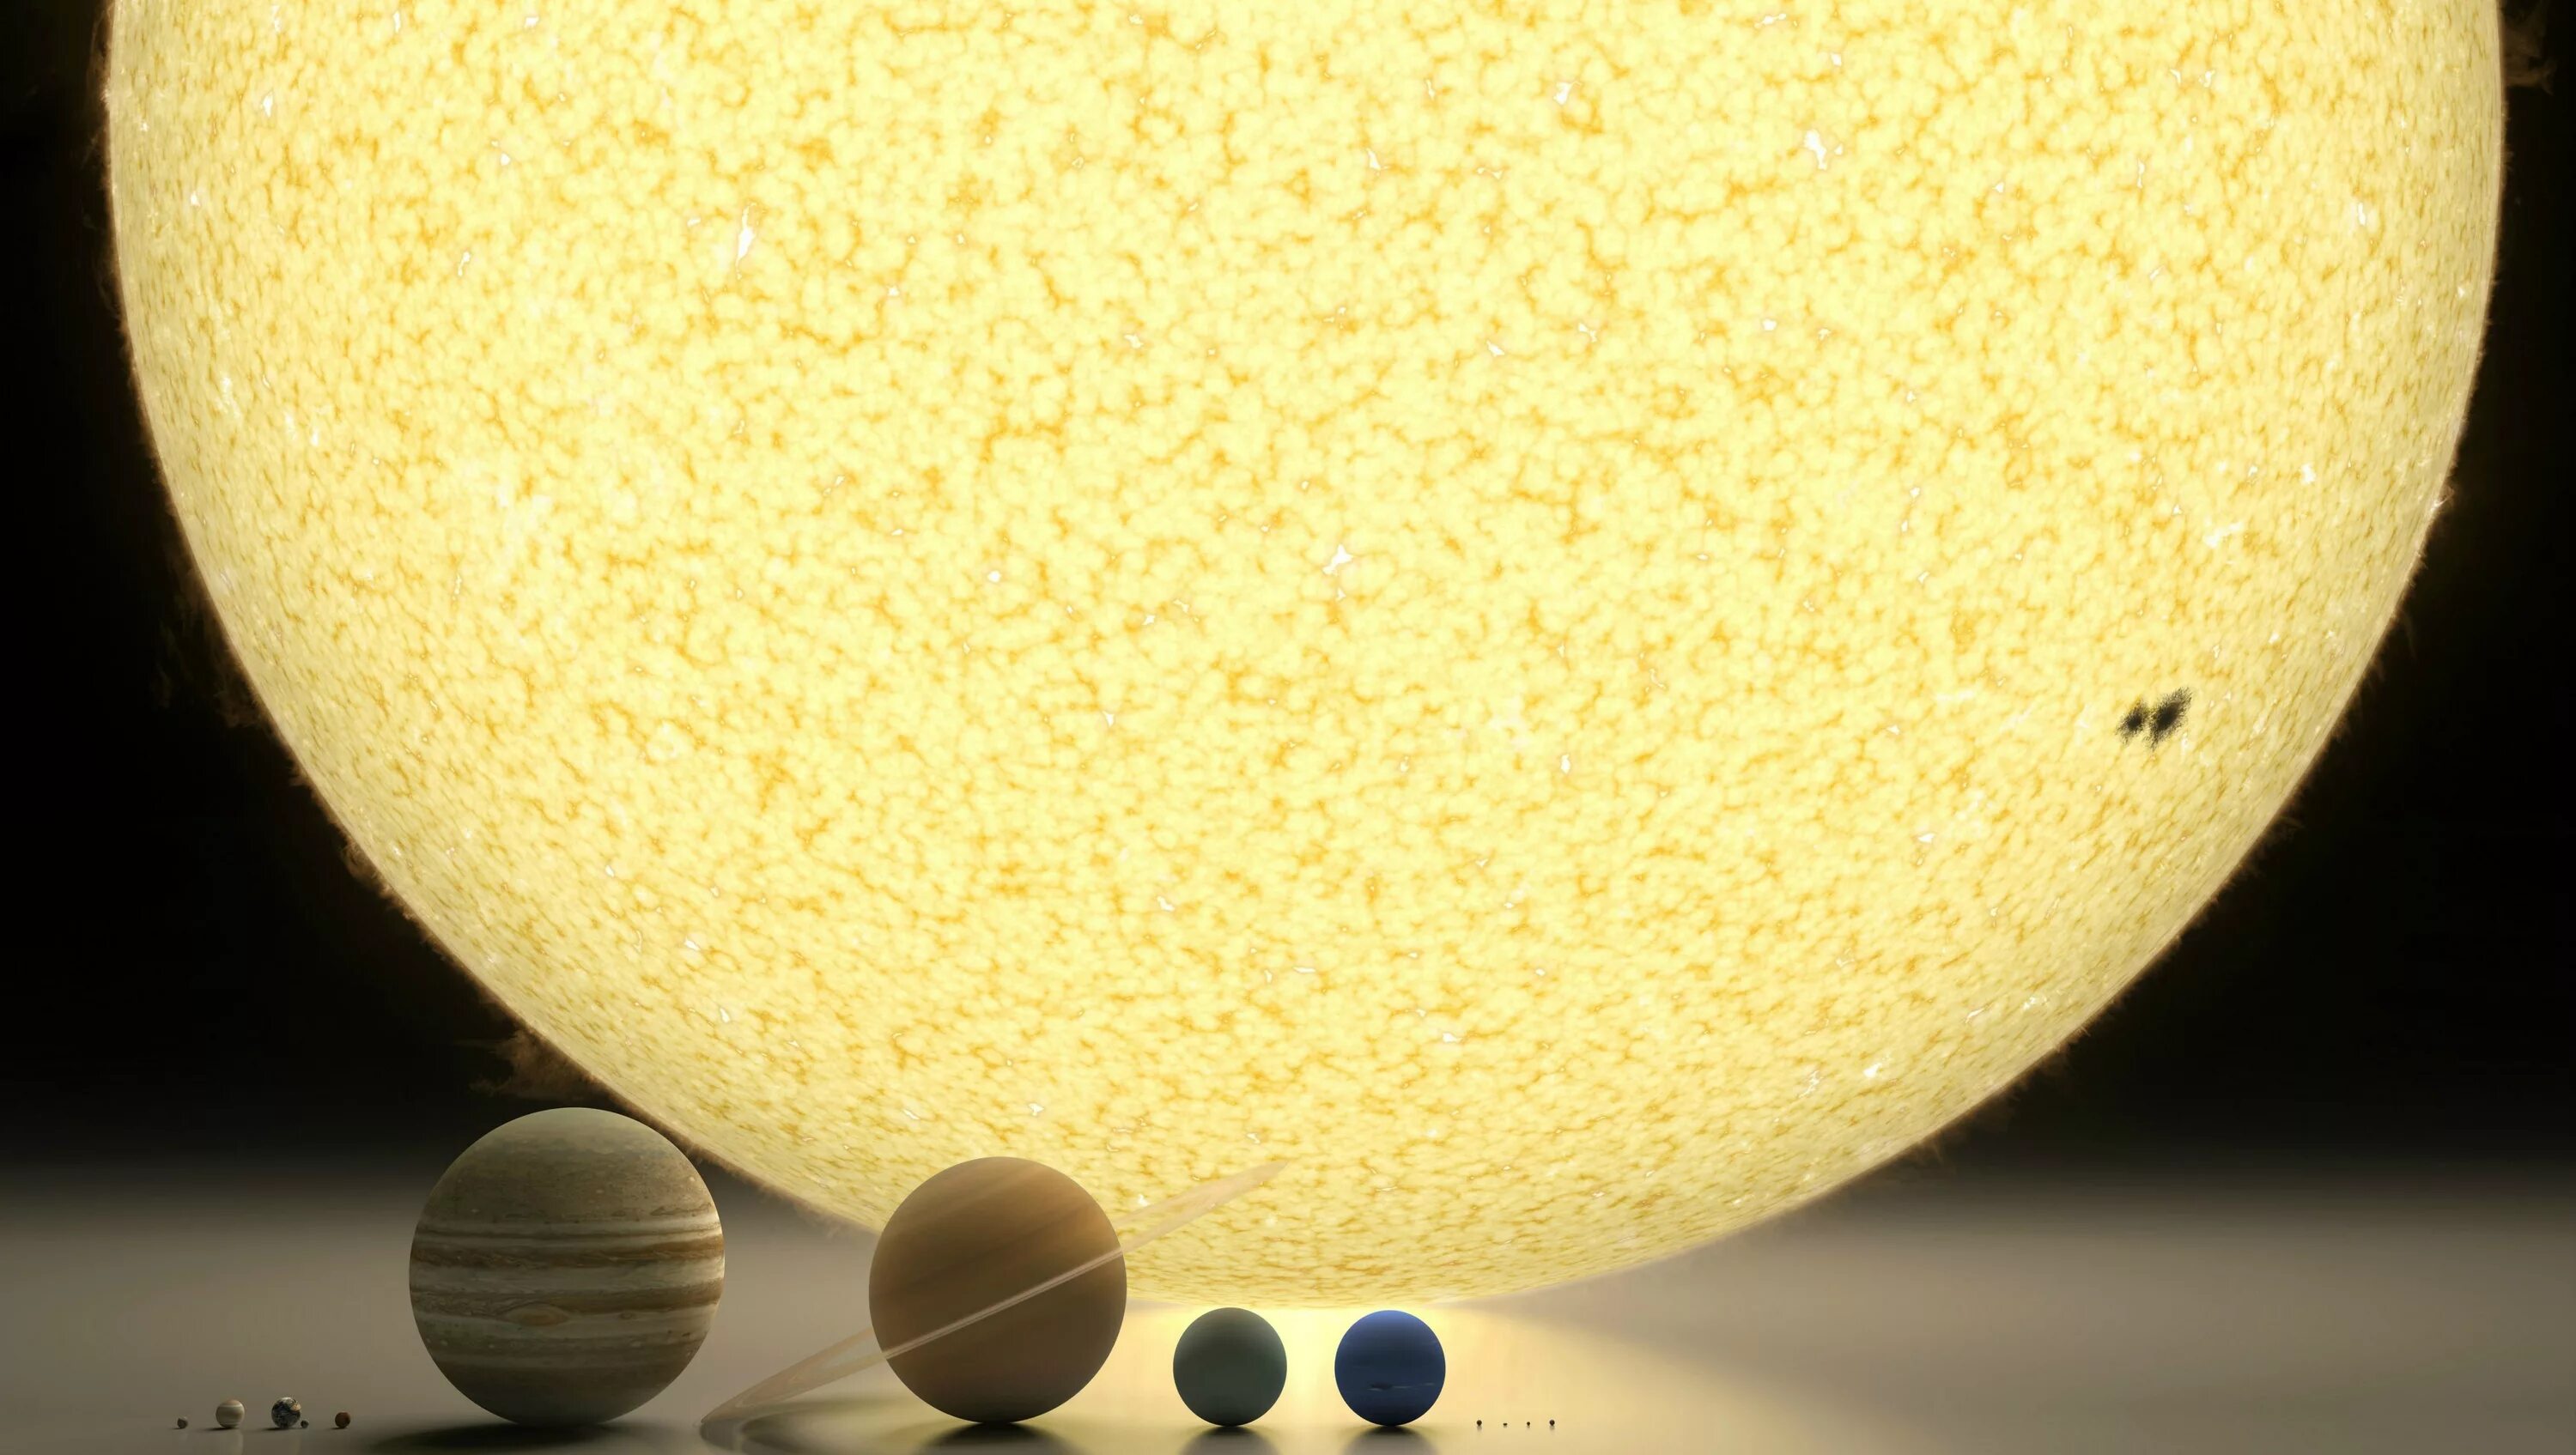 Солнце и земля одинакового размера. Соотношение размеров планет солнечной системы. Сравнение размеров солнца и планет. Размеры солнца и планет. Сраагегие земли и солнца.